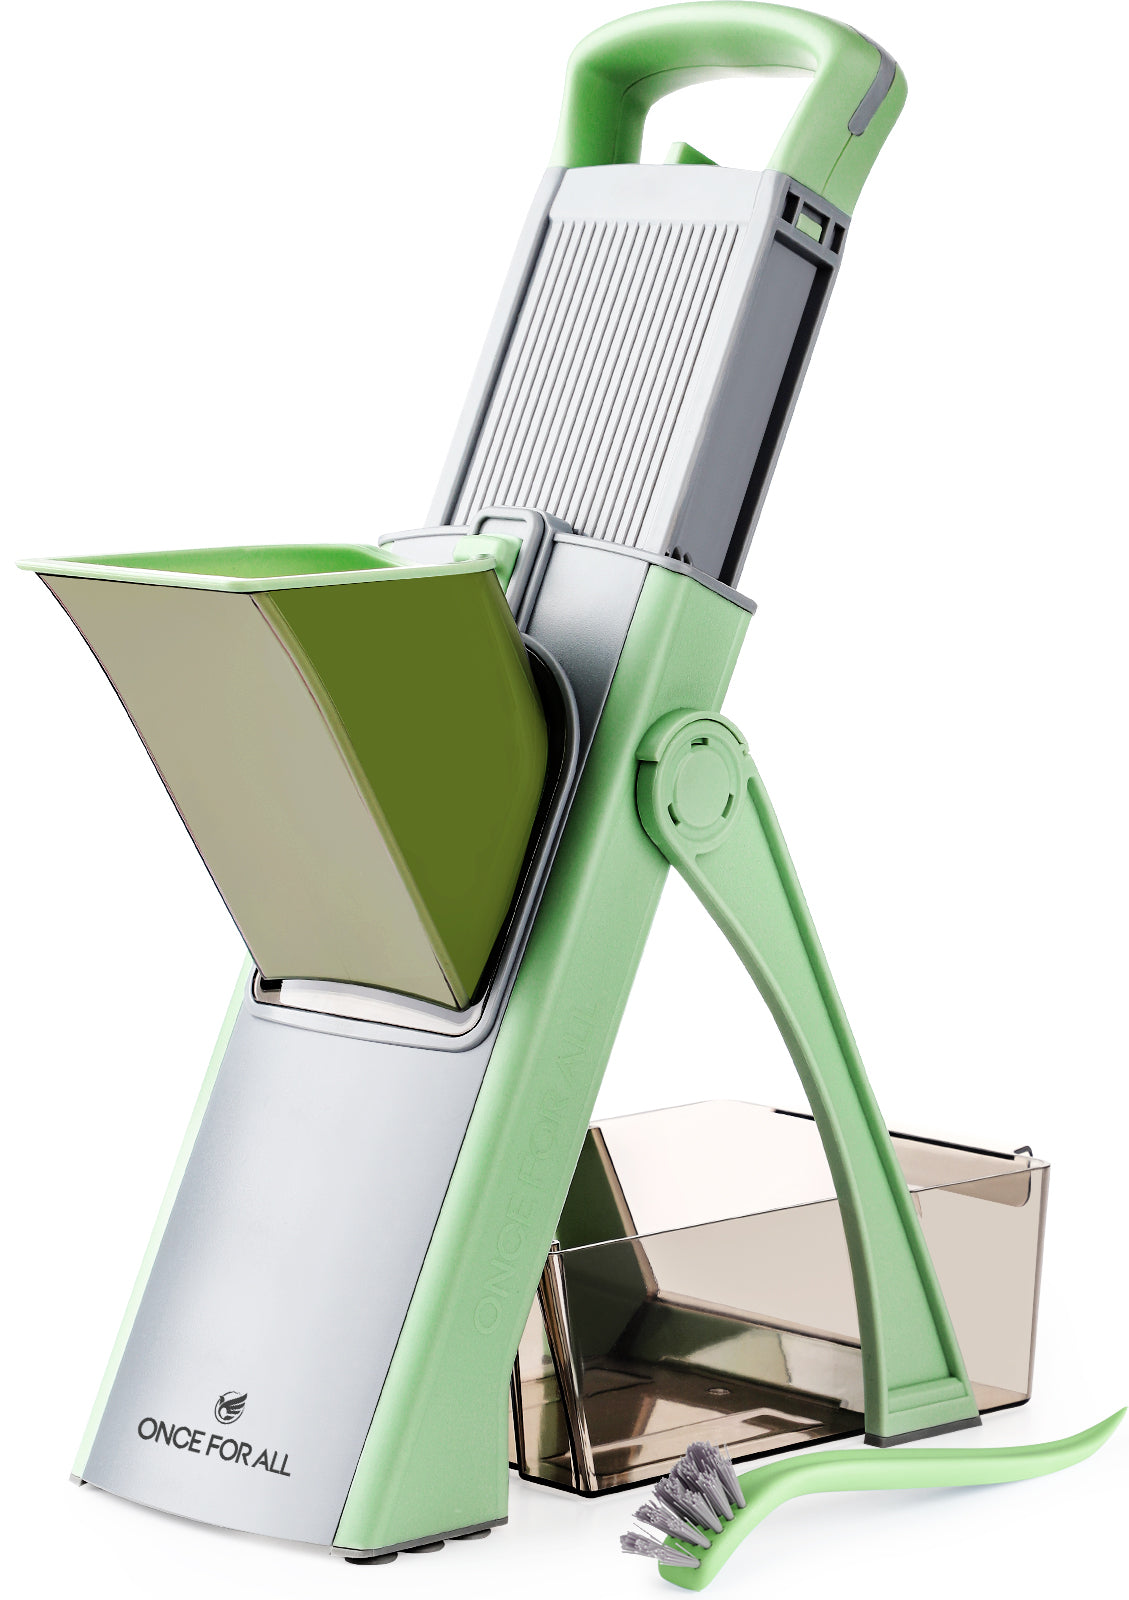 Mandolin slicer - Green tool